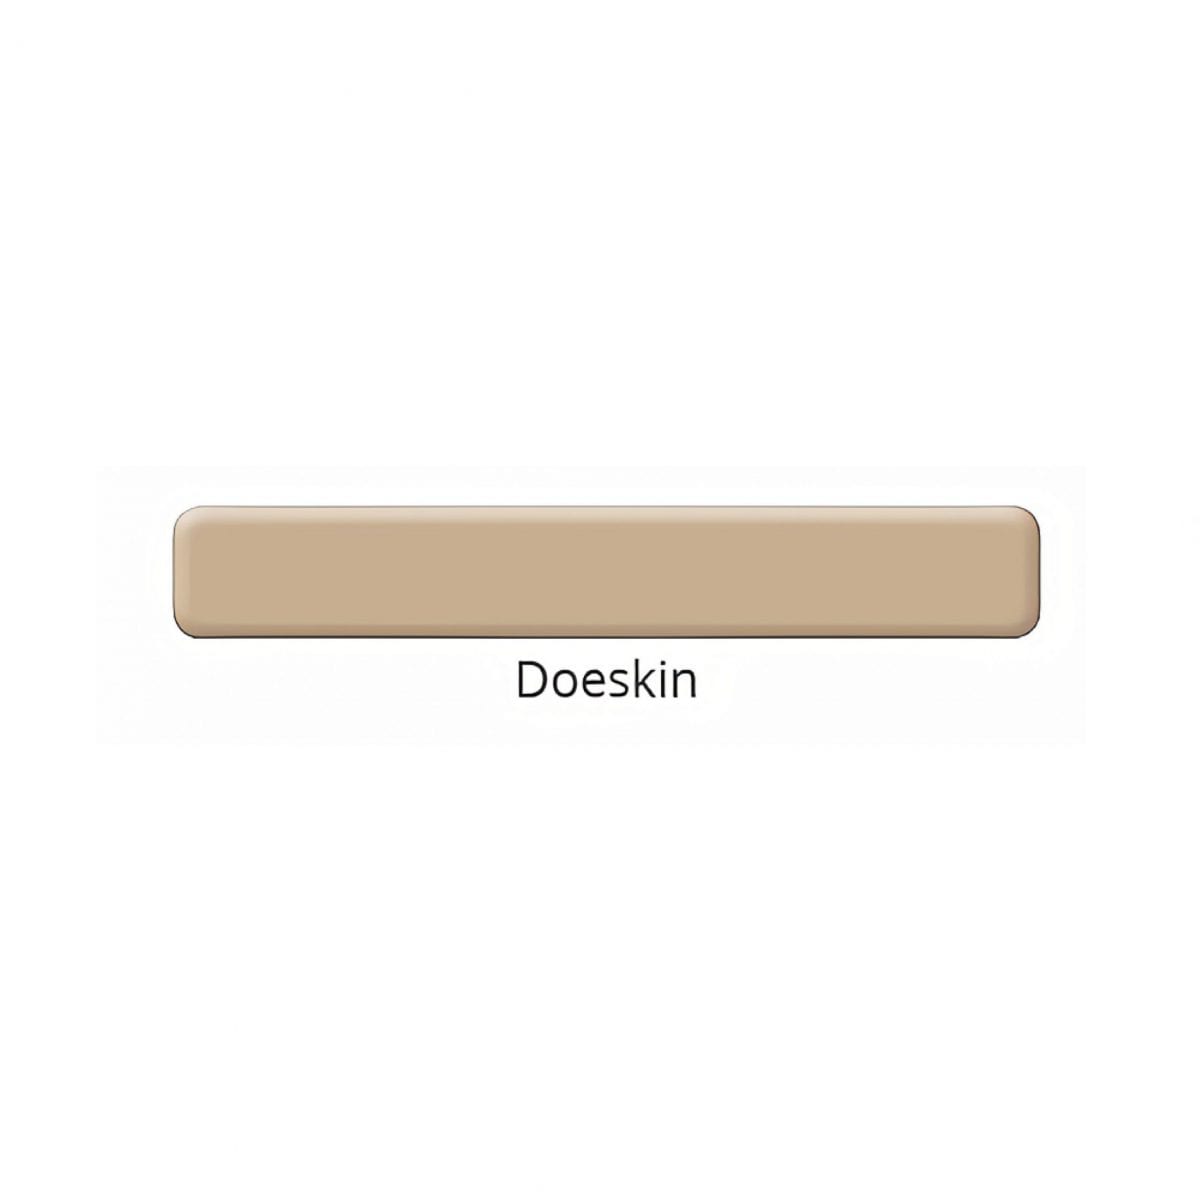 Doeskin color